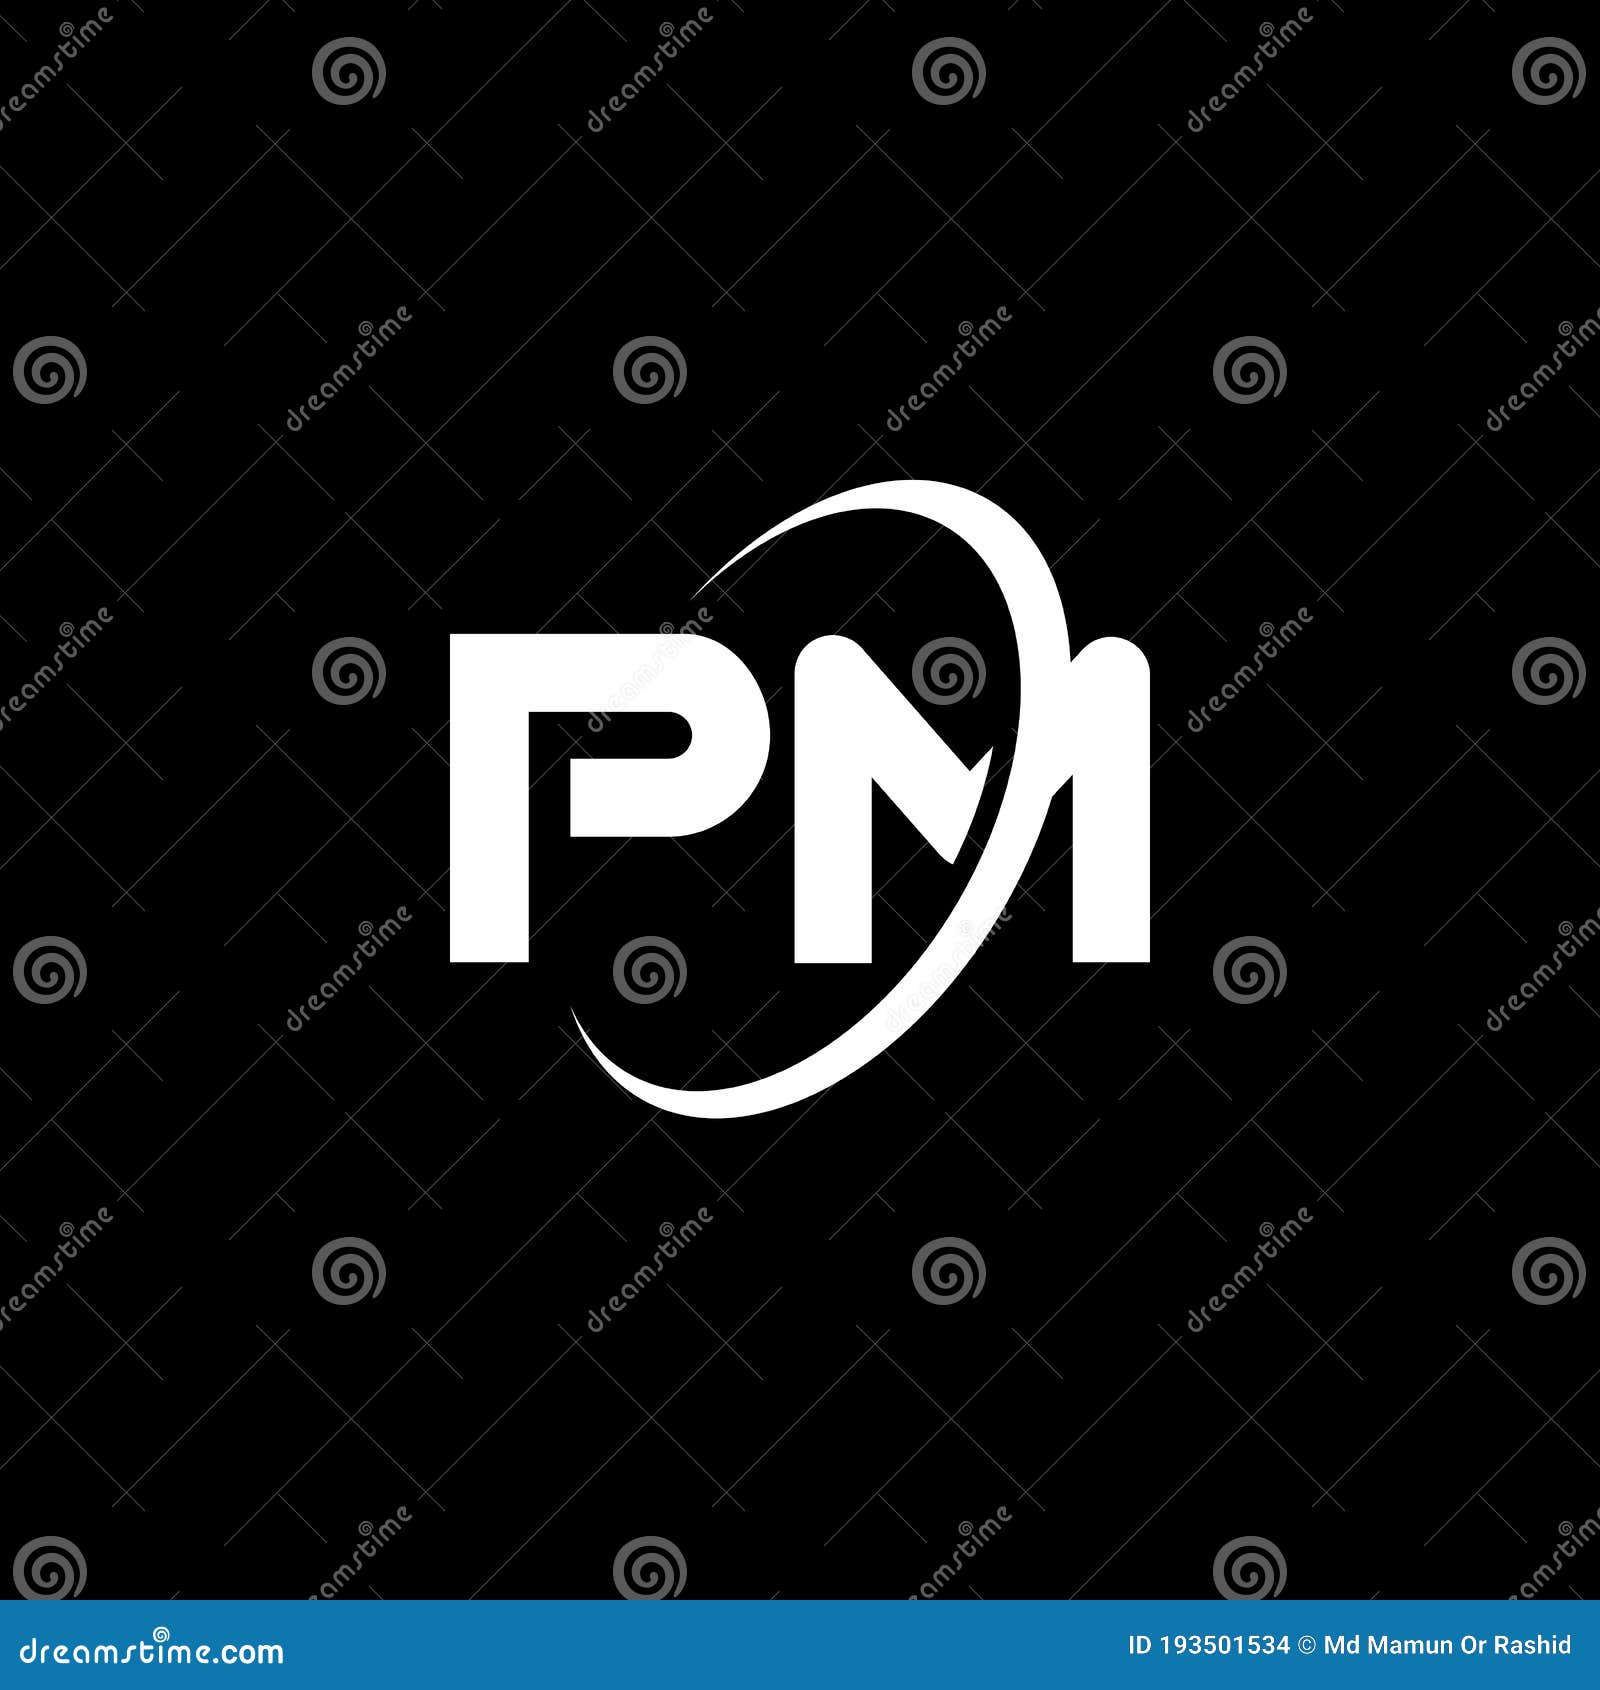 Logo Design Symbols Vector PNG Images, Letter Pm Logo Design